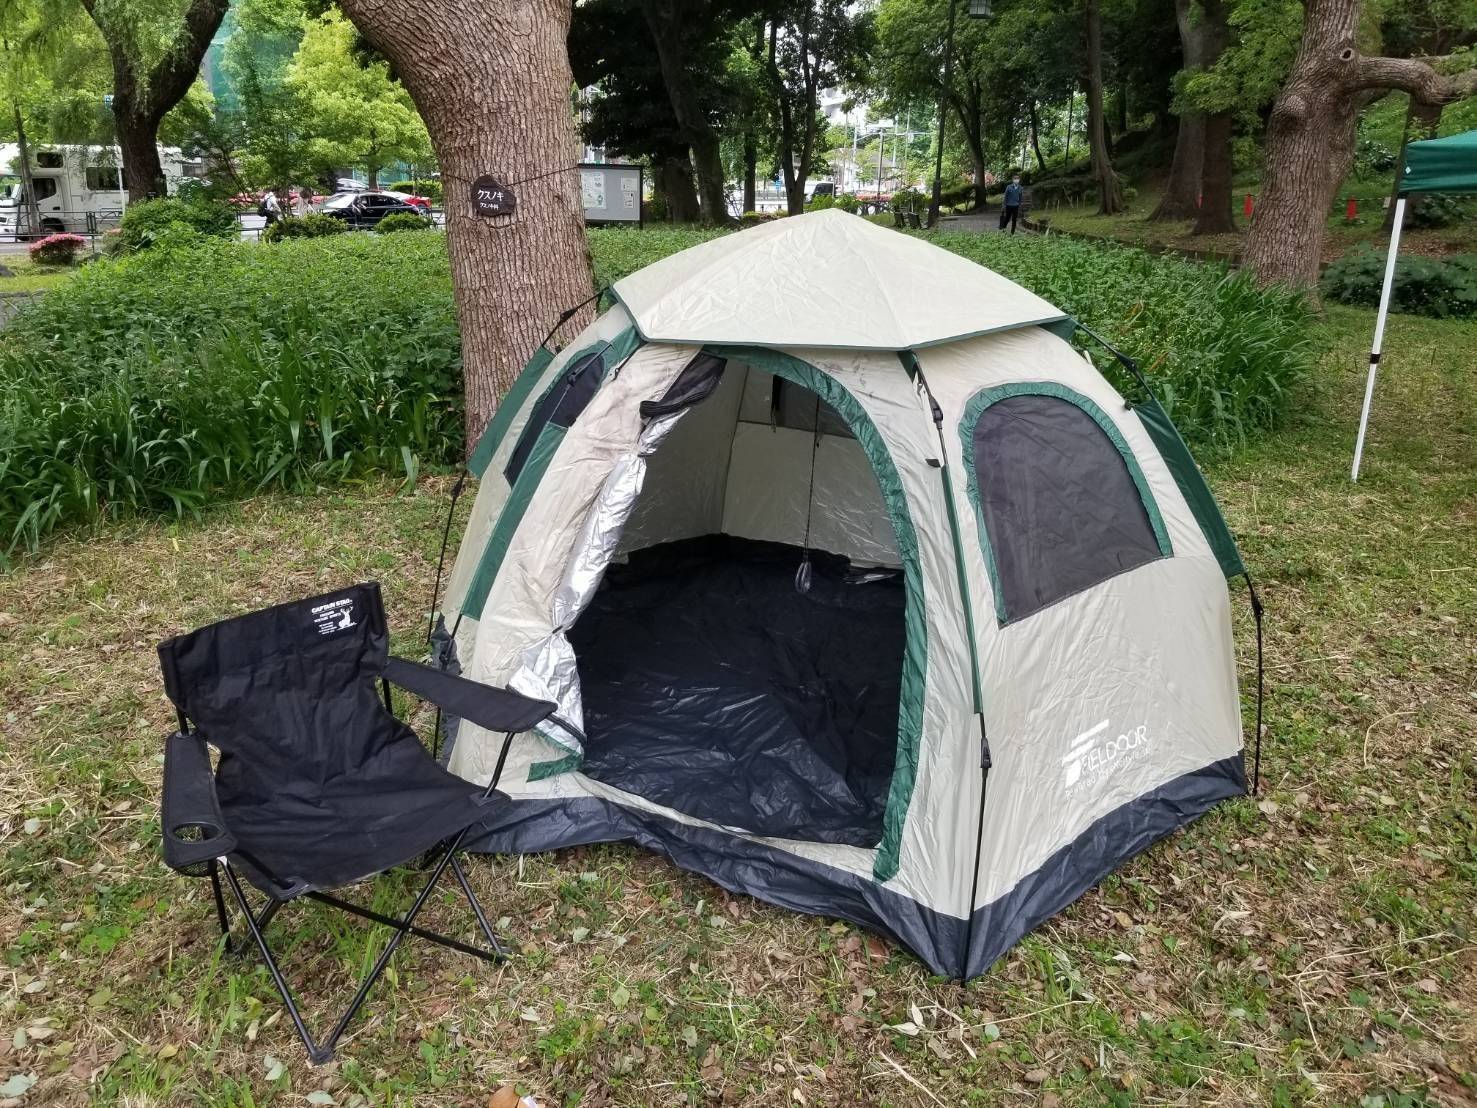 【東京】六人日本露營車24小時租用體驗(JTM-Nomad)